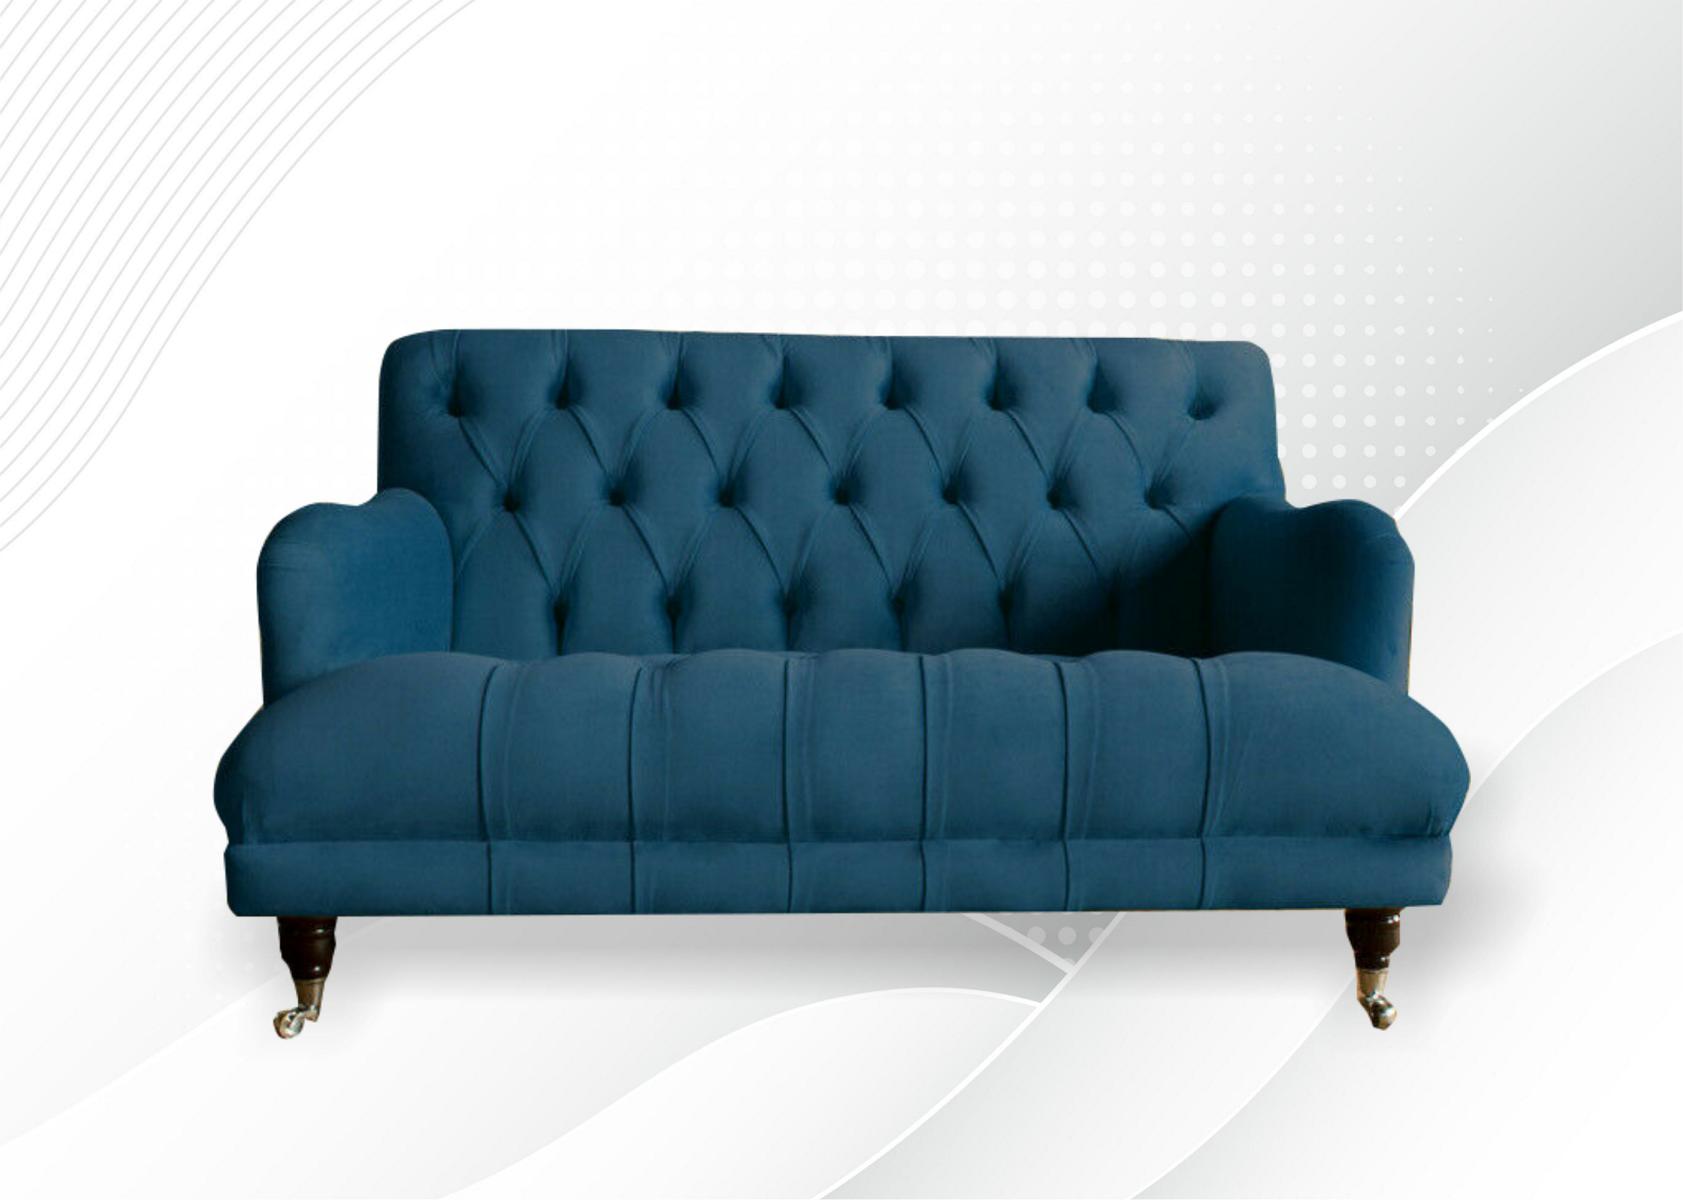 Chesterfield Zweisitzer Couch Polster Turkis Couchen Sofas Sitzpolster Textil